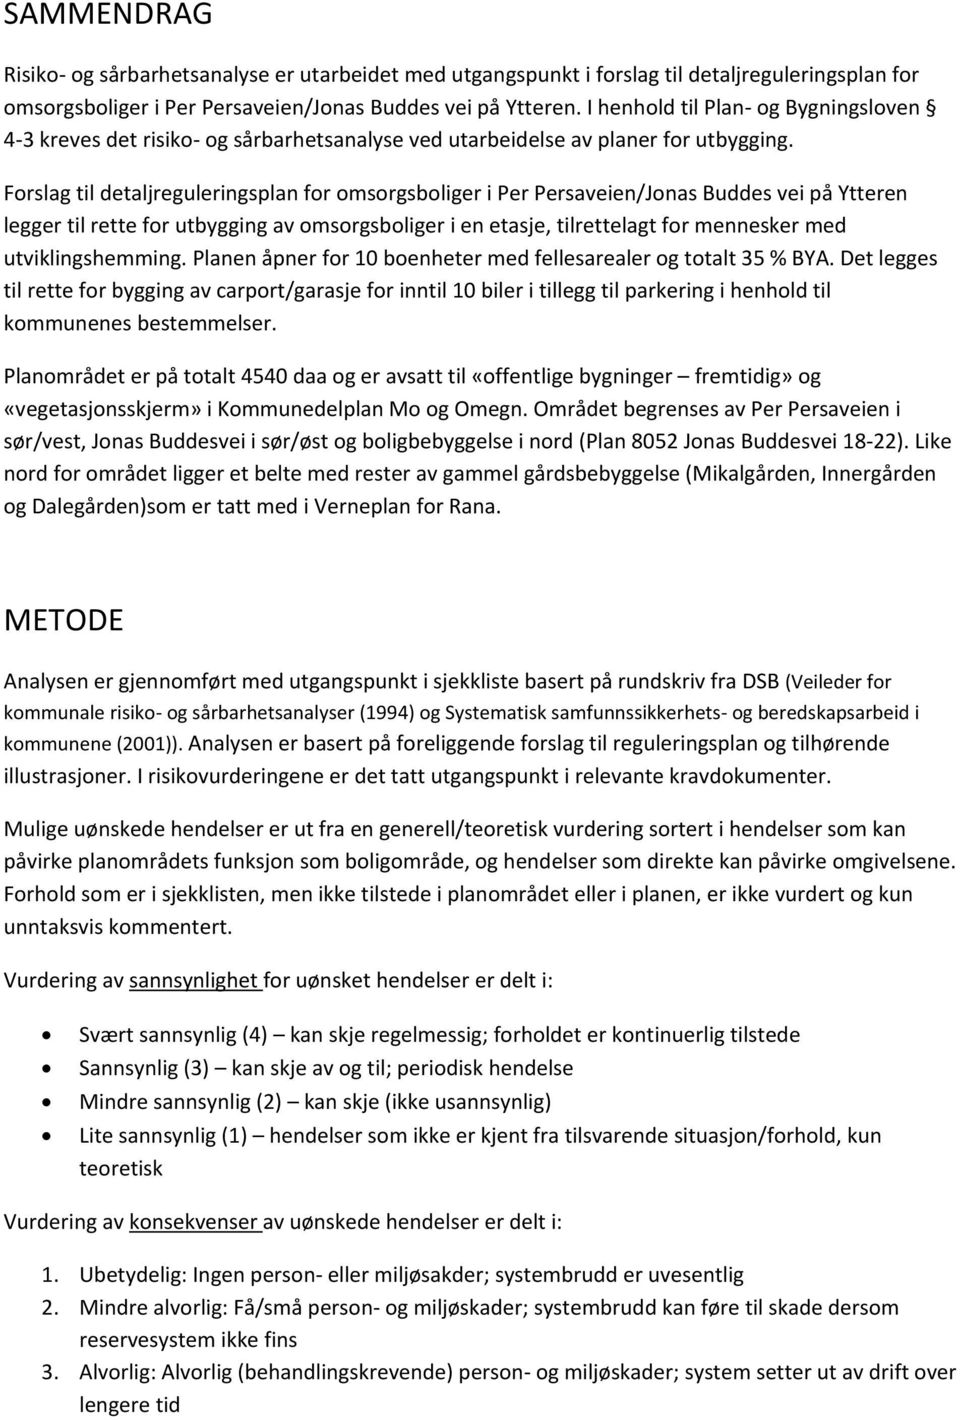 Forslag til detaljreguleringsplan for omsorgsboliger i Per Persaveien/Jonas Buddes vei på Ytteren legger til rette for utbygging av omsorgsboliger i en etasje, tilrettelagt for mennesker med